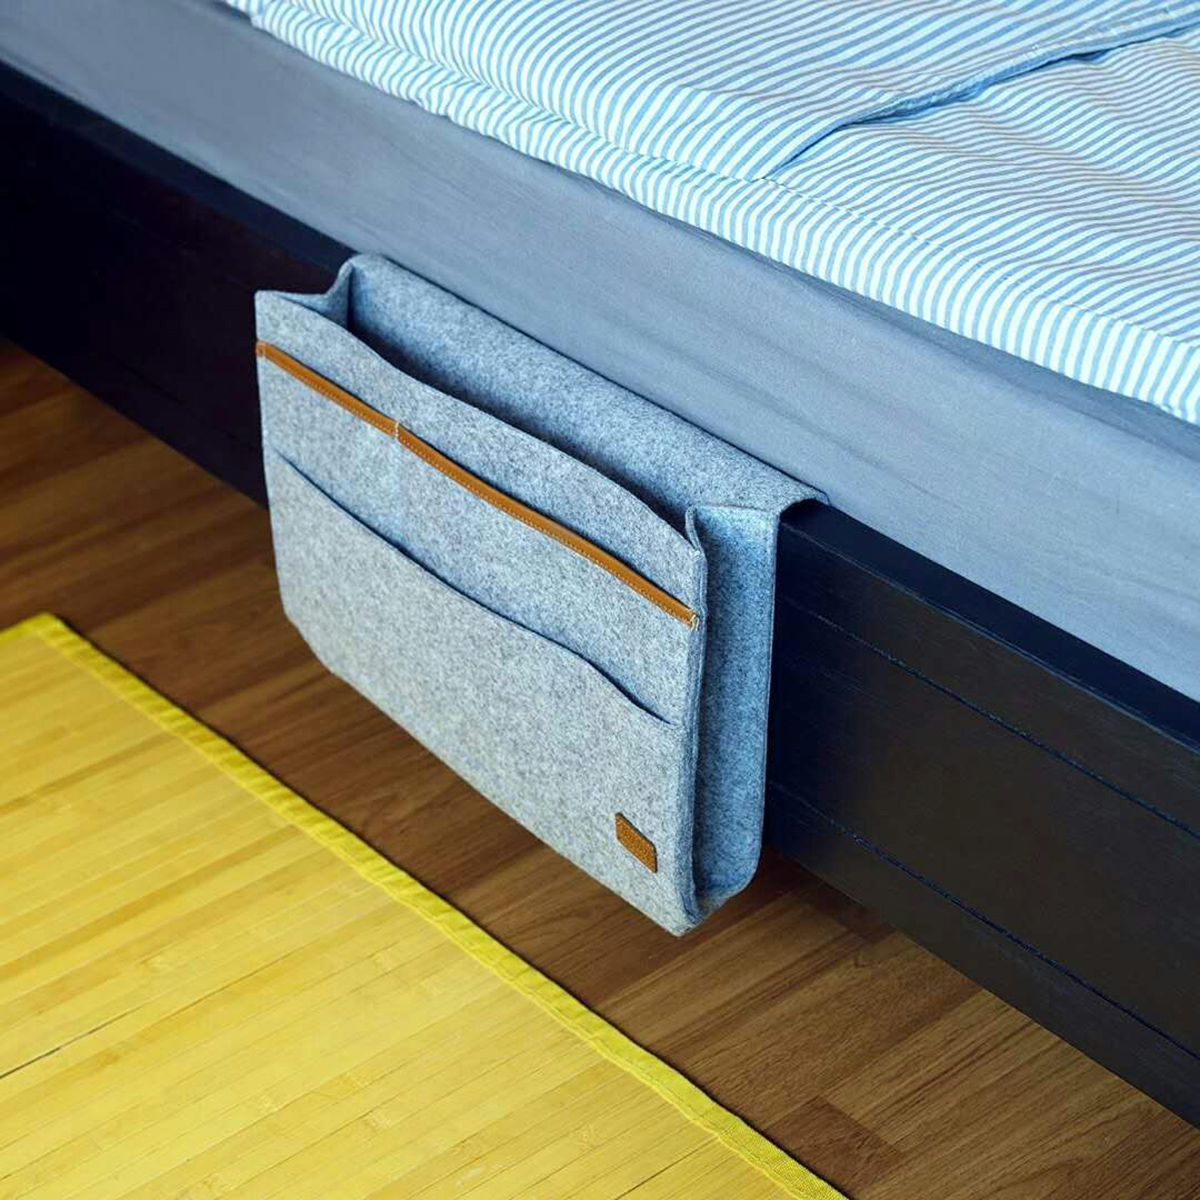 Bedside-Pocket-Storage-Baskets-Hanging-Bag-Felt-Sofa-Phone-Book-Organizer-Remote-Home-Holder-1360407-4